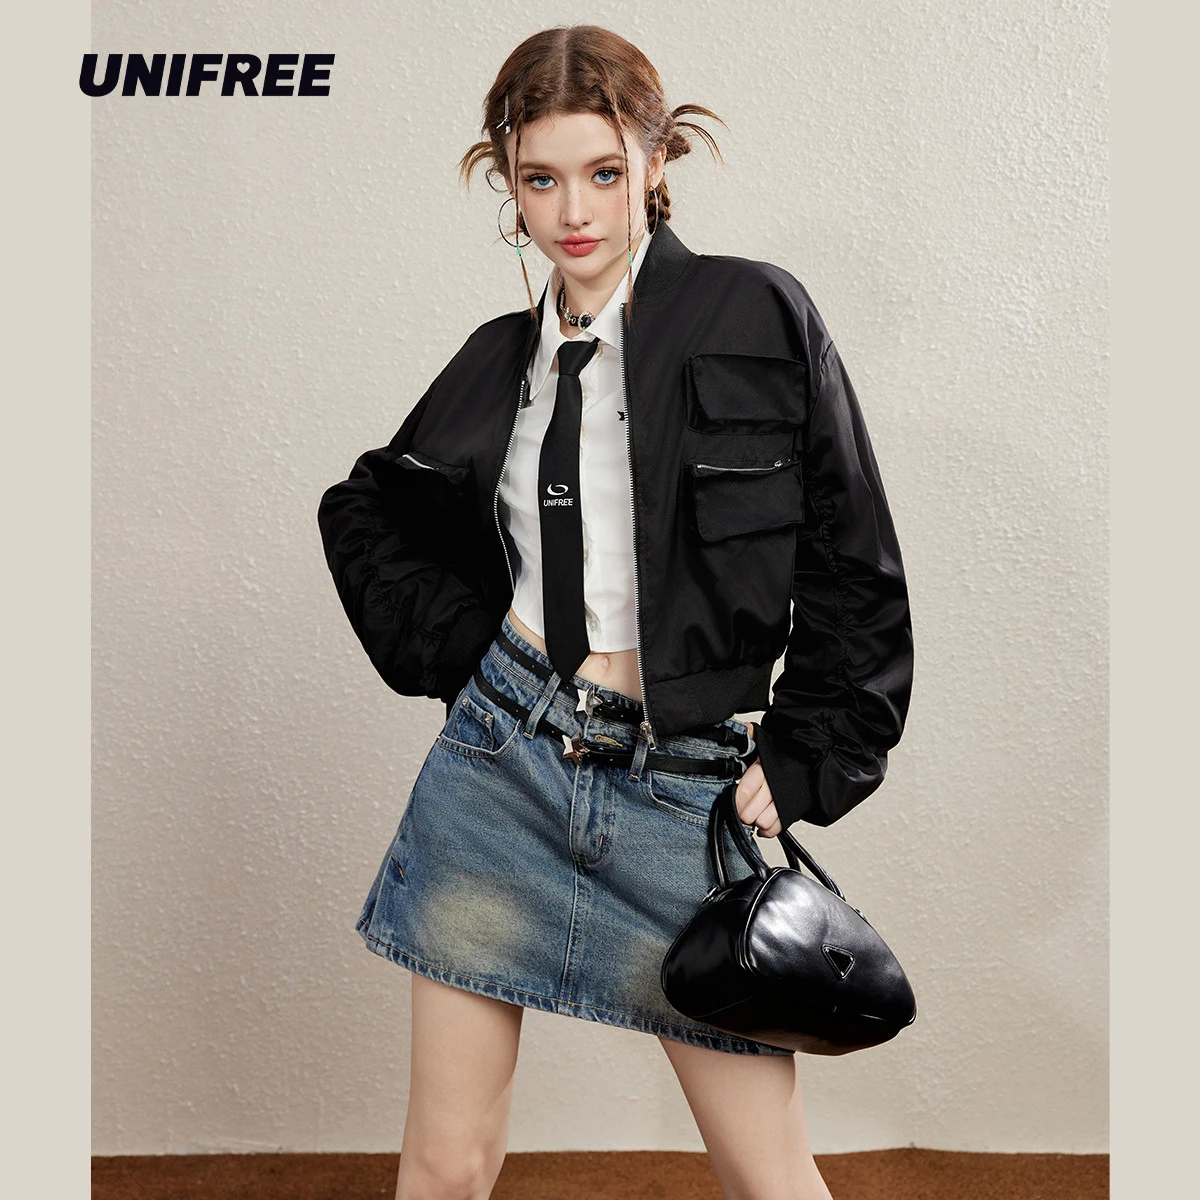 

UNIFREE Black Short Jacket Baseball Cargo Cropped Bomber Jackets Zip Up Coat Women Outerwear Techwear Streetwear Top